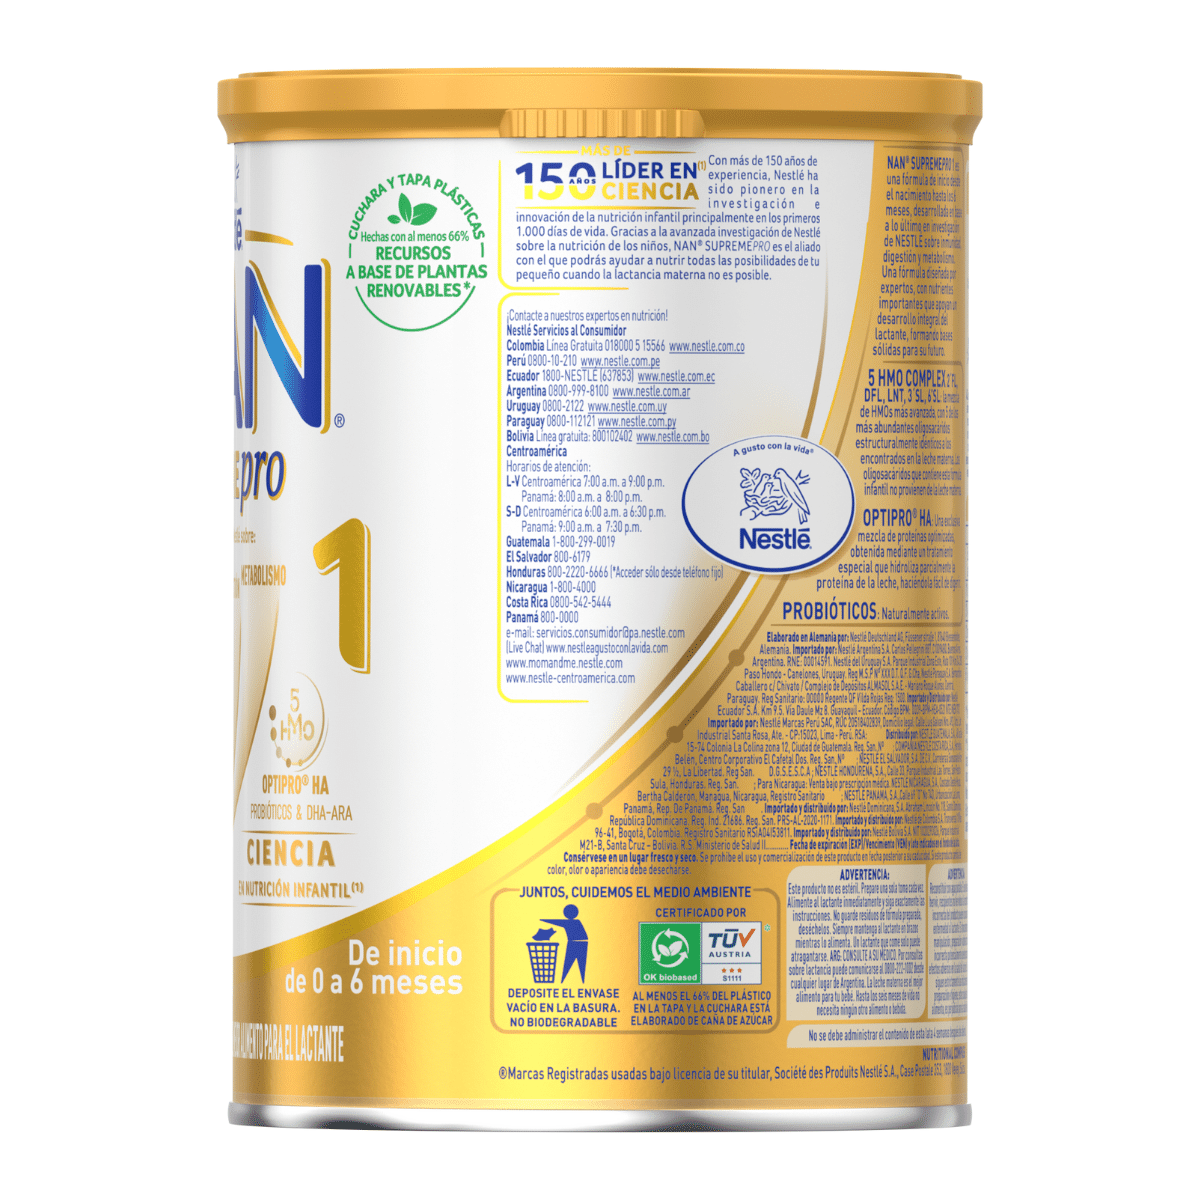 La innovadora fórmula de la leche infantil NAN Supreme 2 de @NestleBebe  #NANSupreme